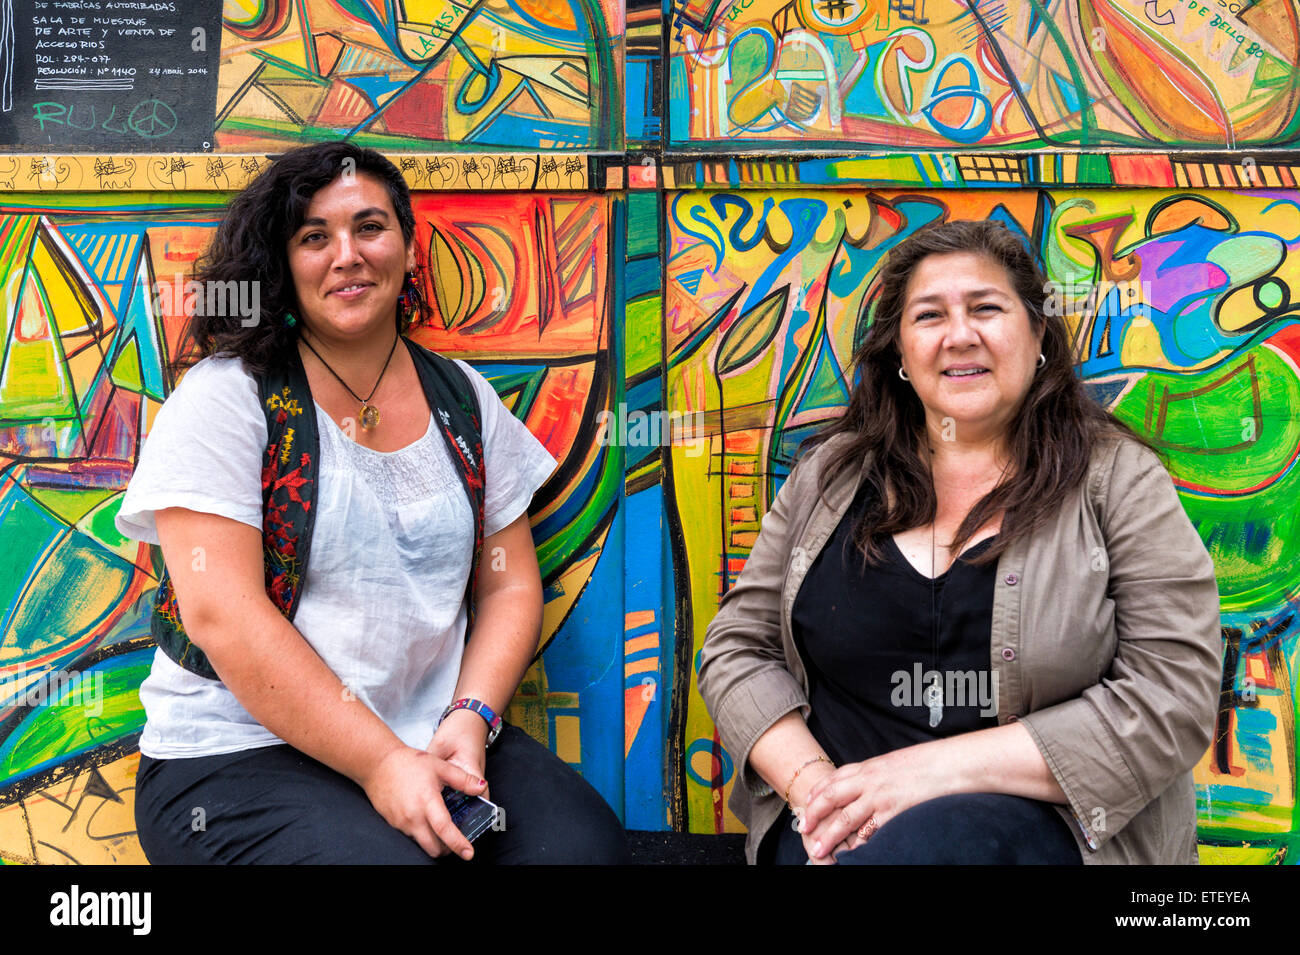 Deux femmes devant un mur couvert de graffitis, quartier de Bellavista, Santiago, Chili Banque D'Images